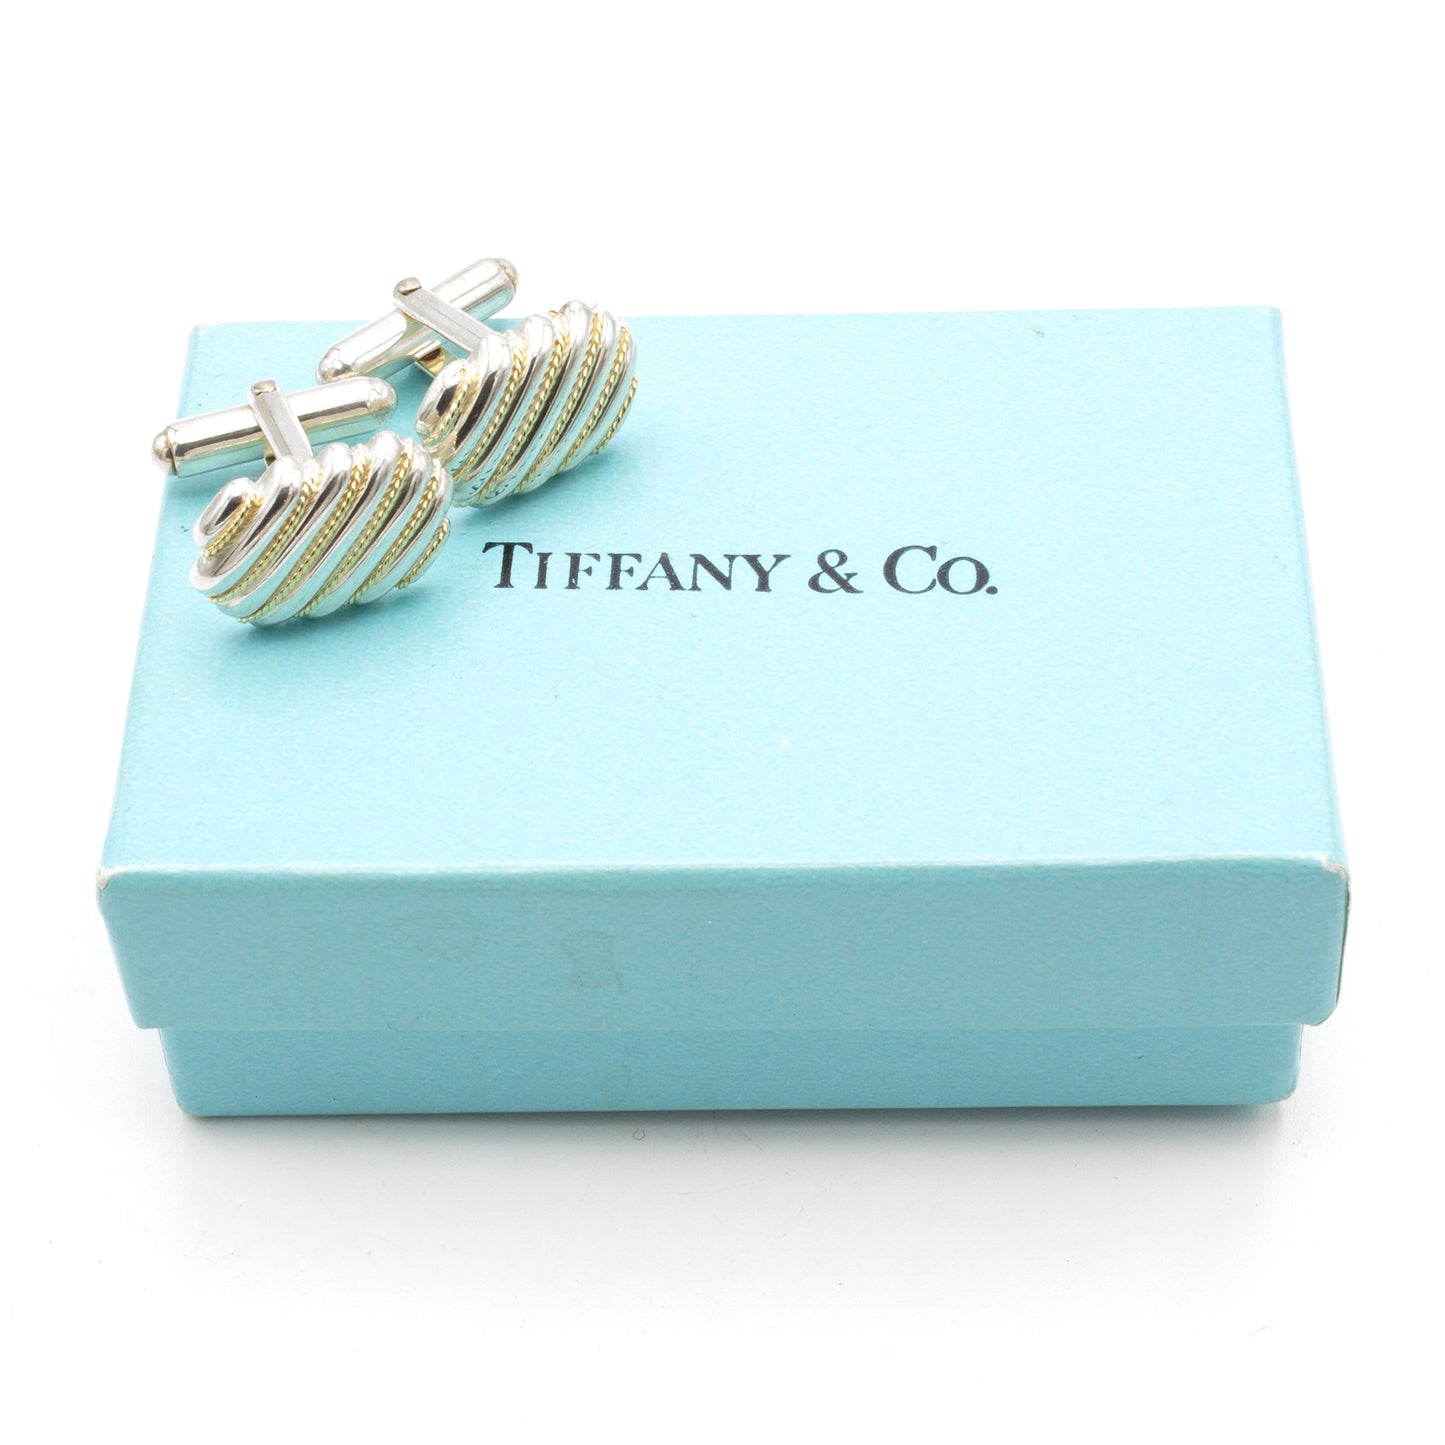 Tiffany & Co Cufflinks